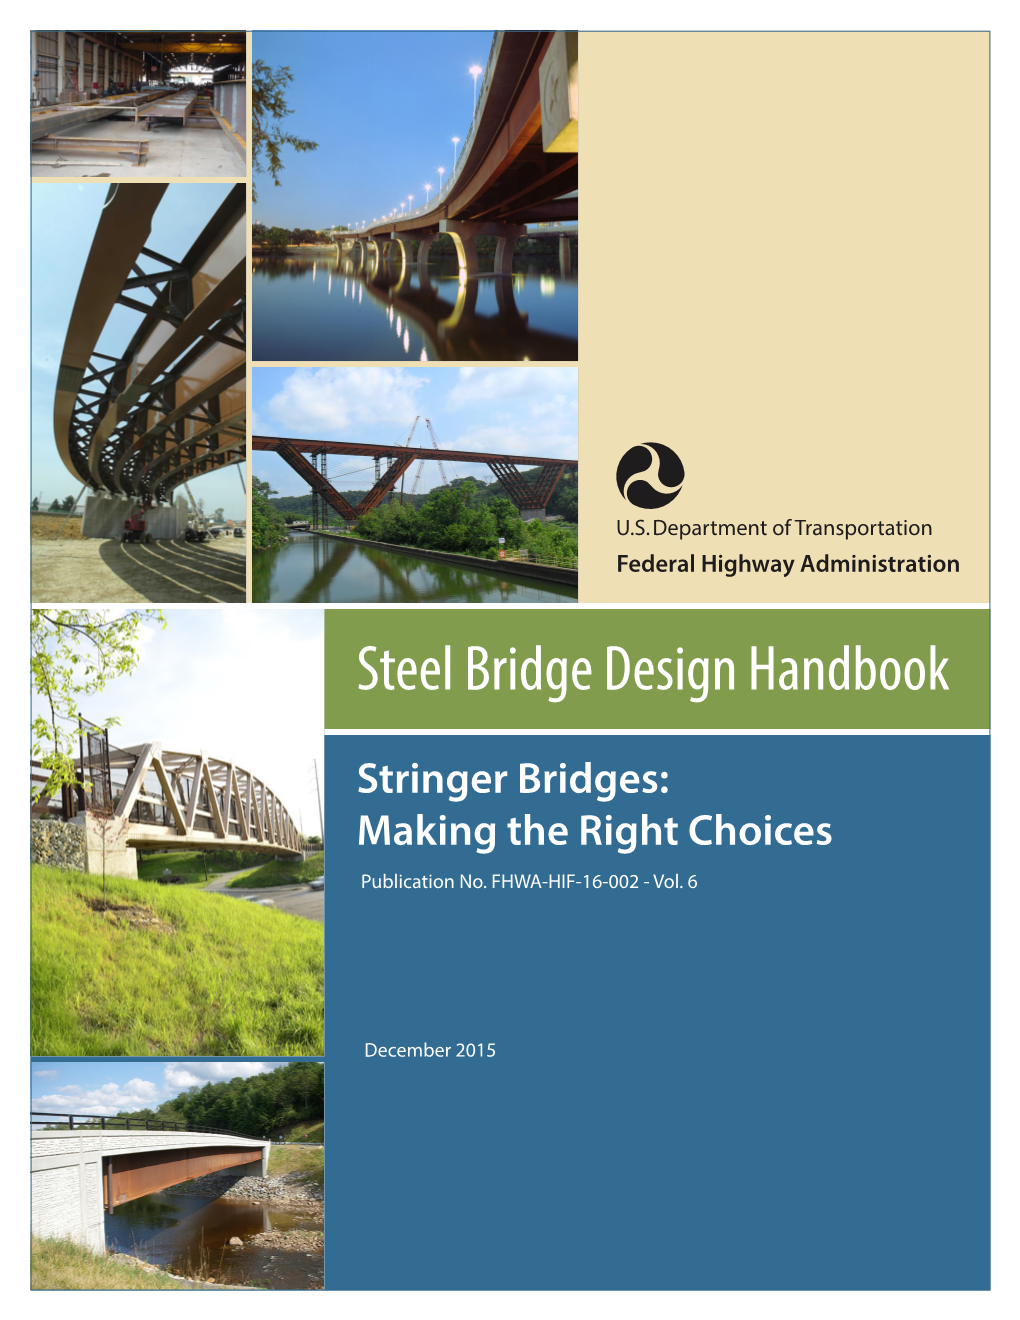 Steel Bridge Design Handbook Vol. 6